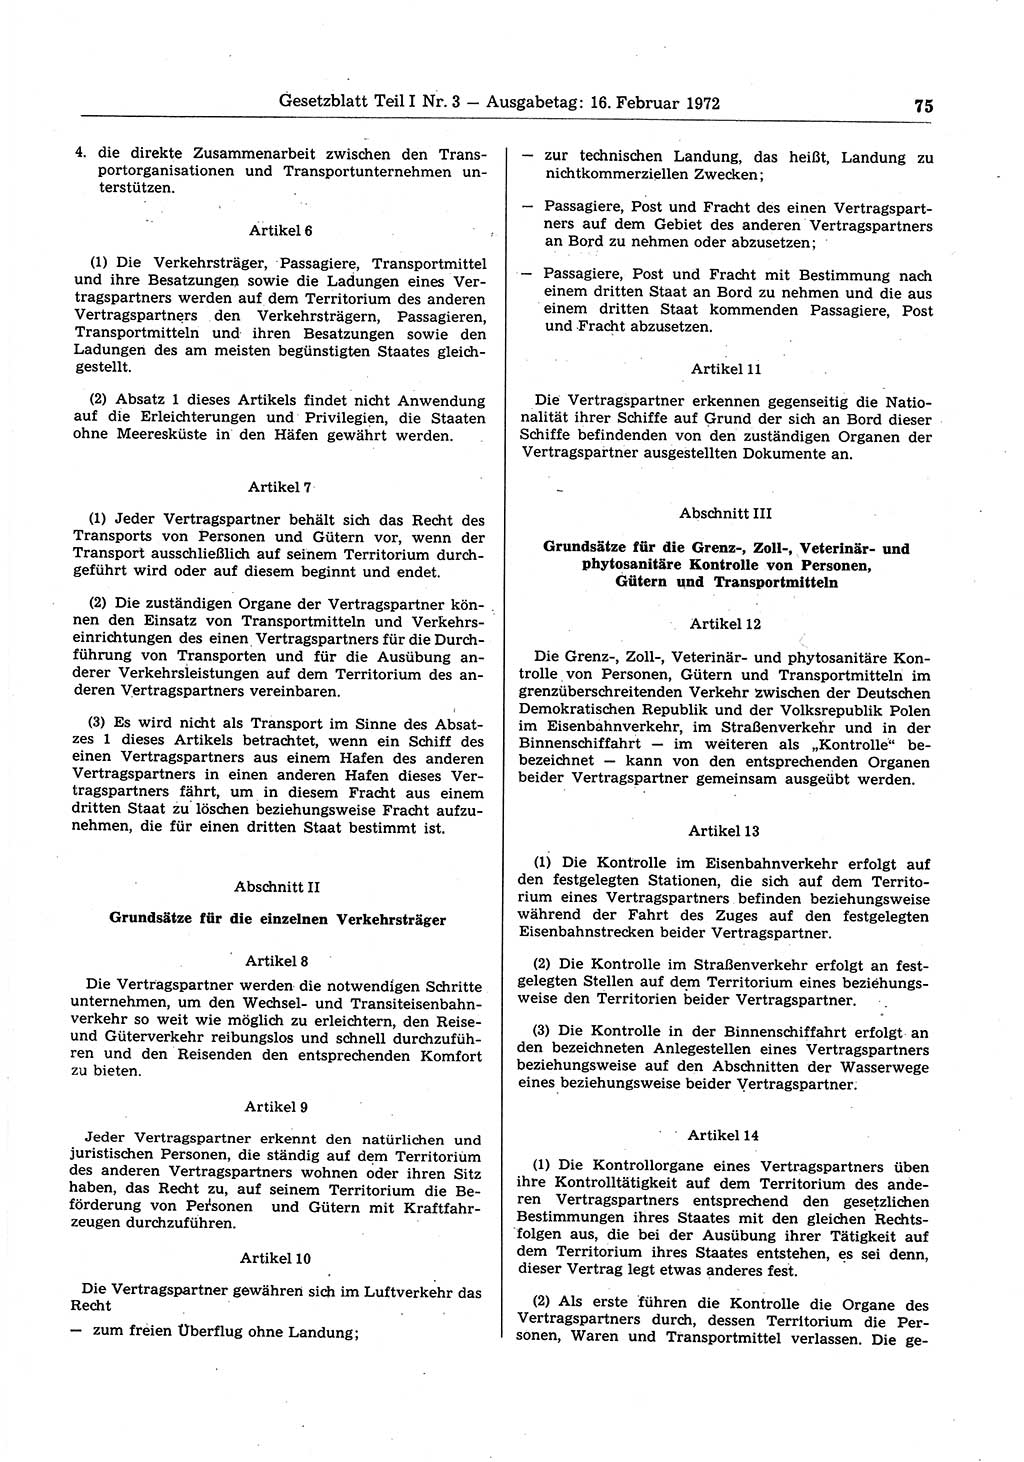 Gesetzblatt (GBl.) der Deutschen Demokratischen Republik (DDR) Teil Ⅰ 1972, Seite 75 (GBl. DDR Ⅰ 1972, S. 75)